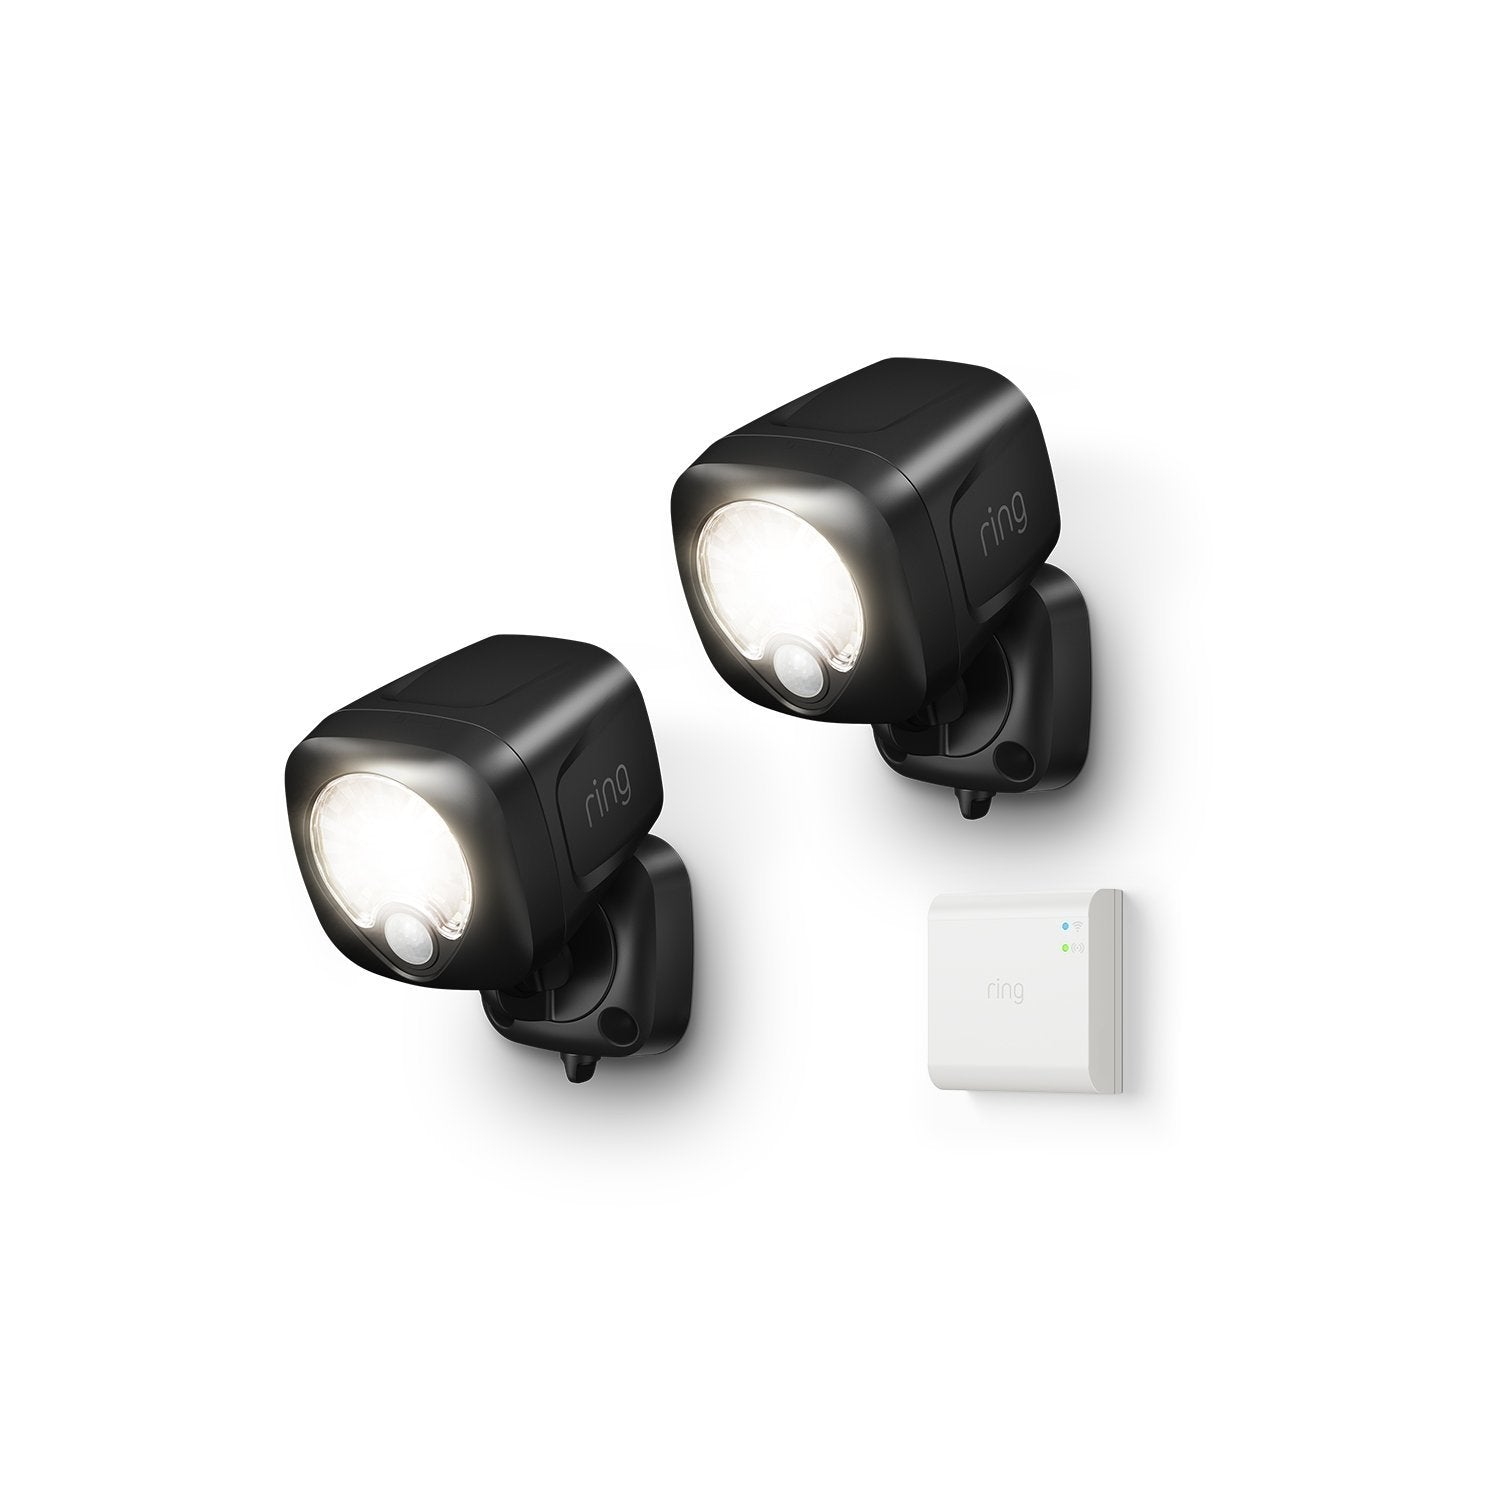 Smart Lighting Spotlight 2-Pack + Bridge - Black:Smart Lighting Spotlight 2-Pack + Bridge